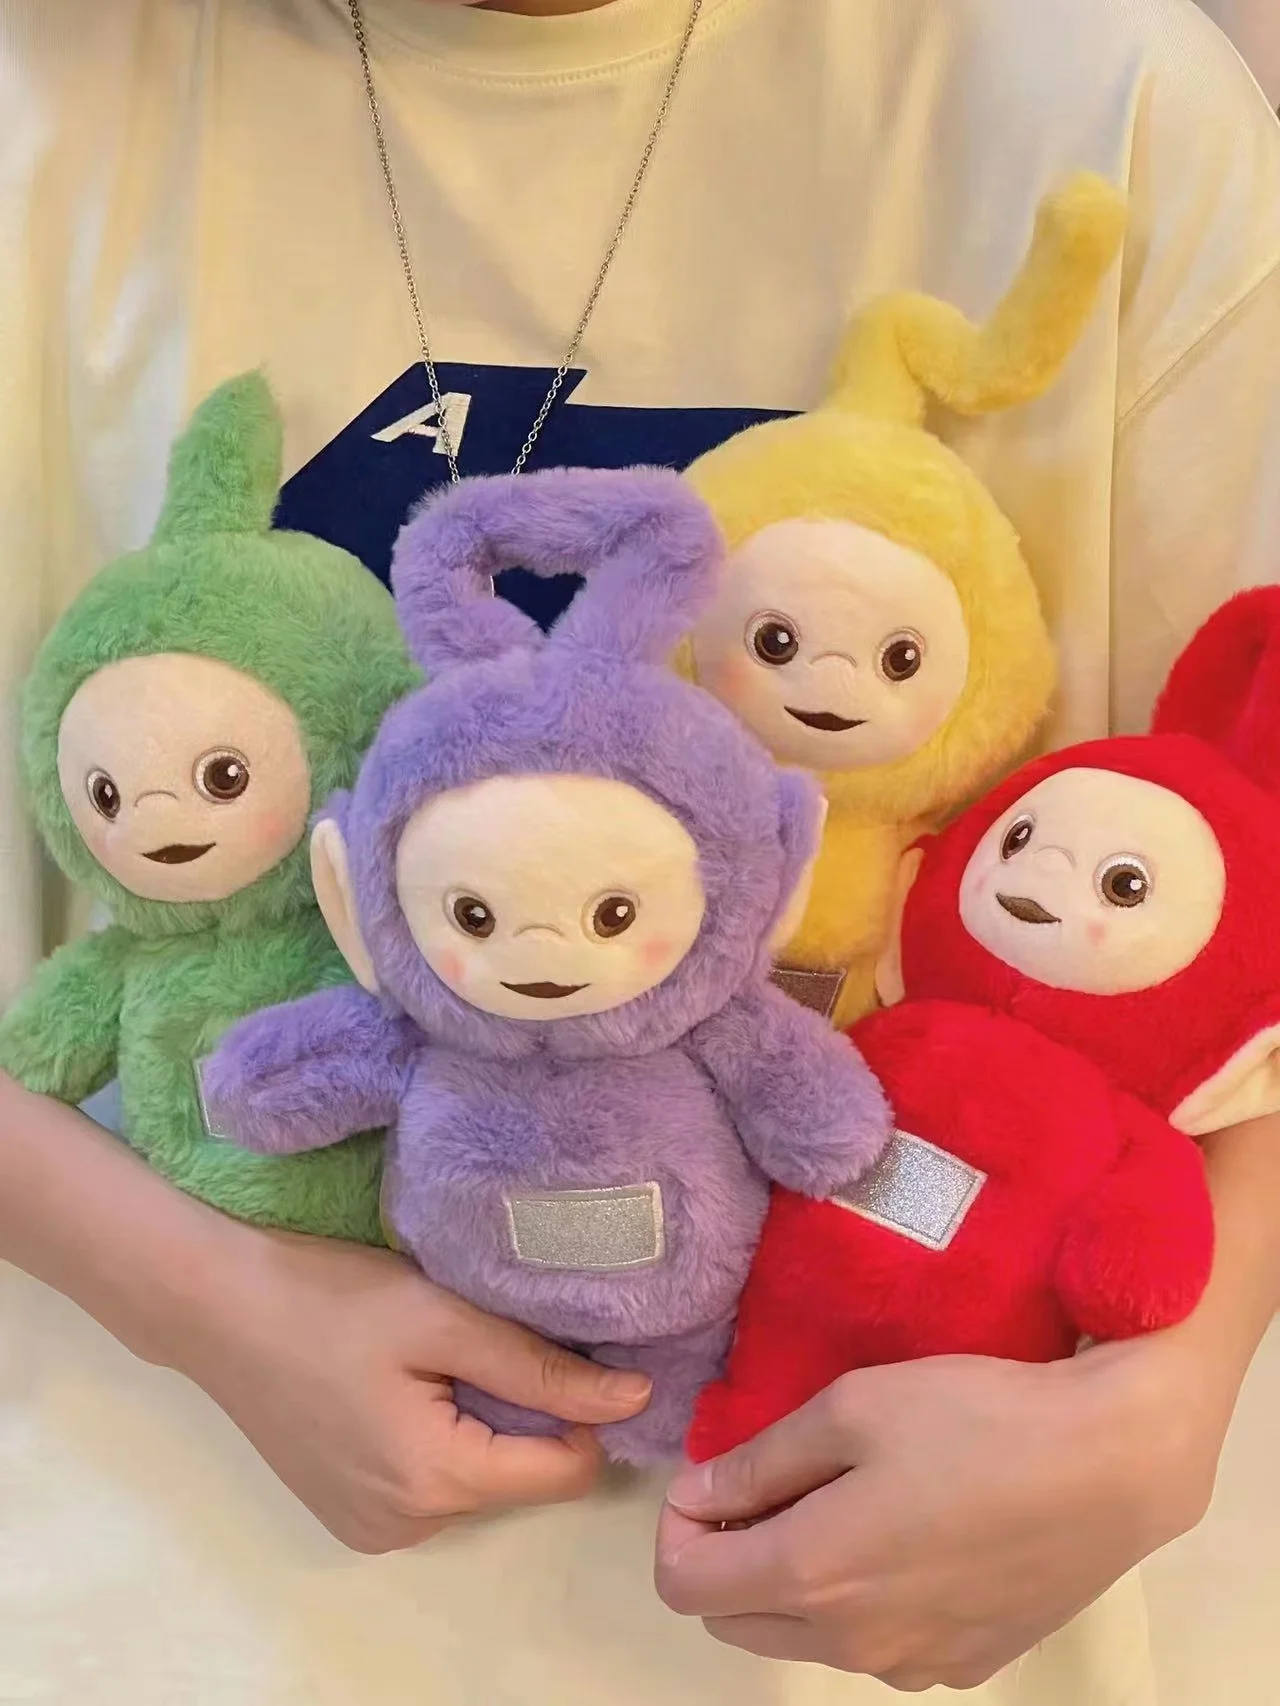 Teletubbies Stuffed Animals | Stuffed Dolls Teletubbies | Teletubbies  Stuffed Toys - New - Aliexpress